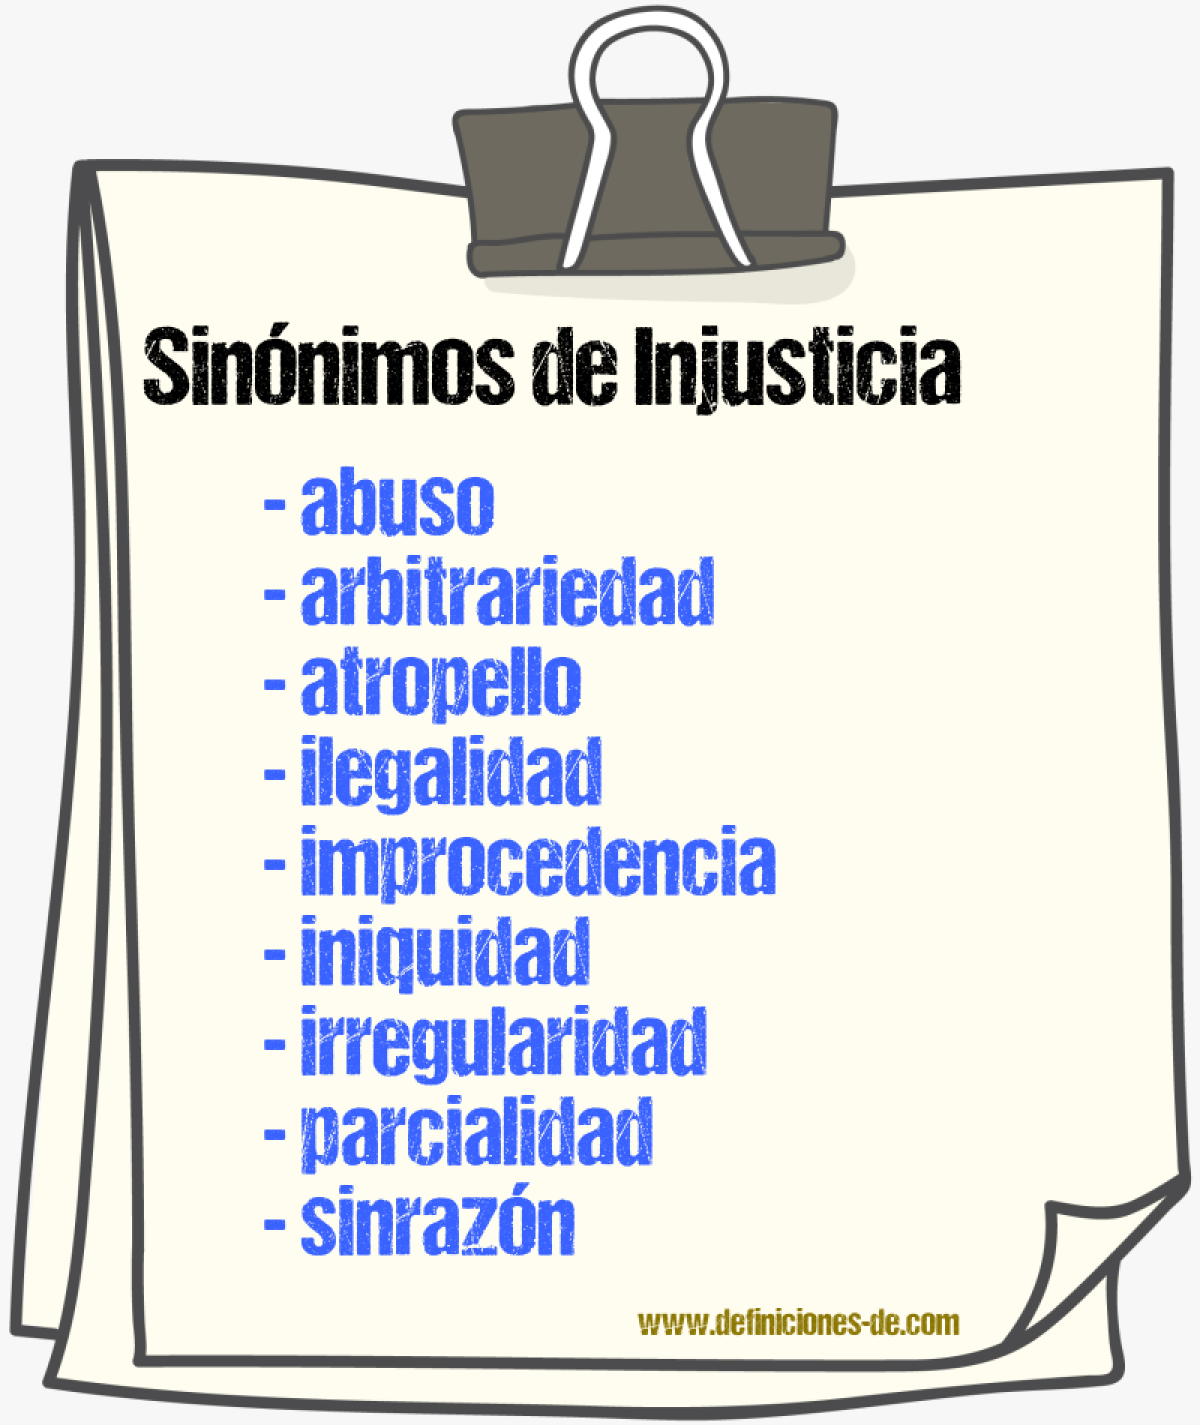 Sinónimos de injusticia